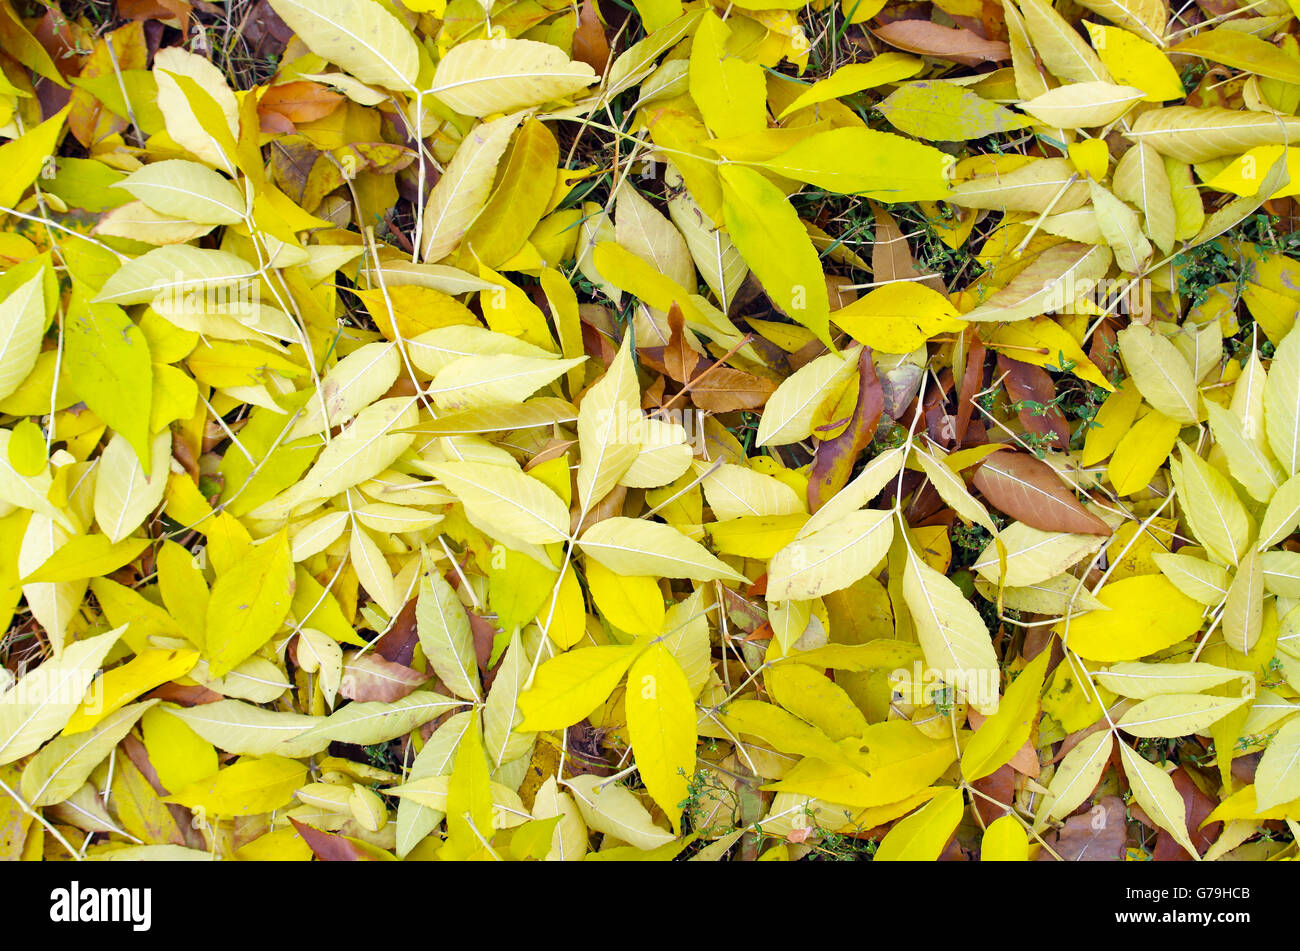 Vue de dessus d'un fond de feuilles d'automne jaune frêne qui couvrent complètement la surface de la pelouse. Banque D'Images